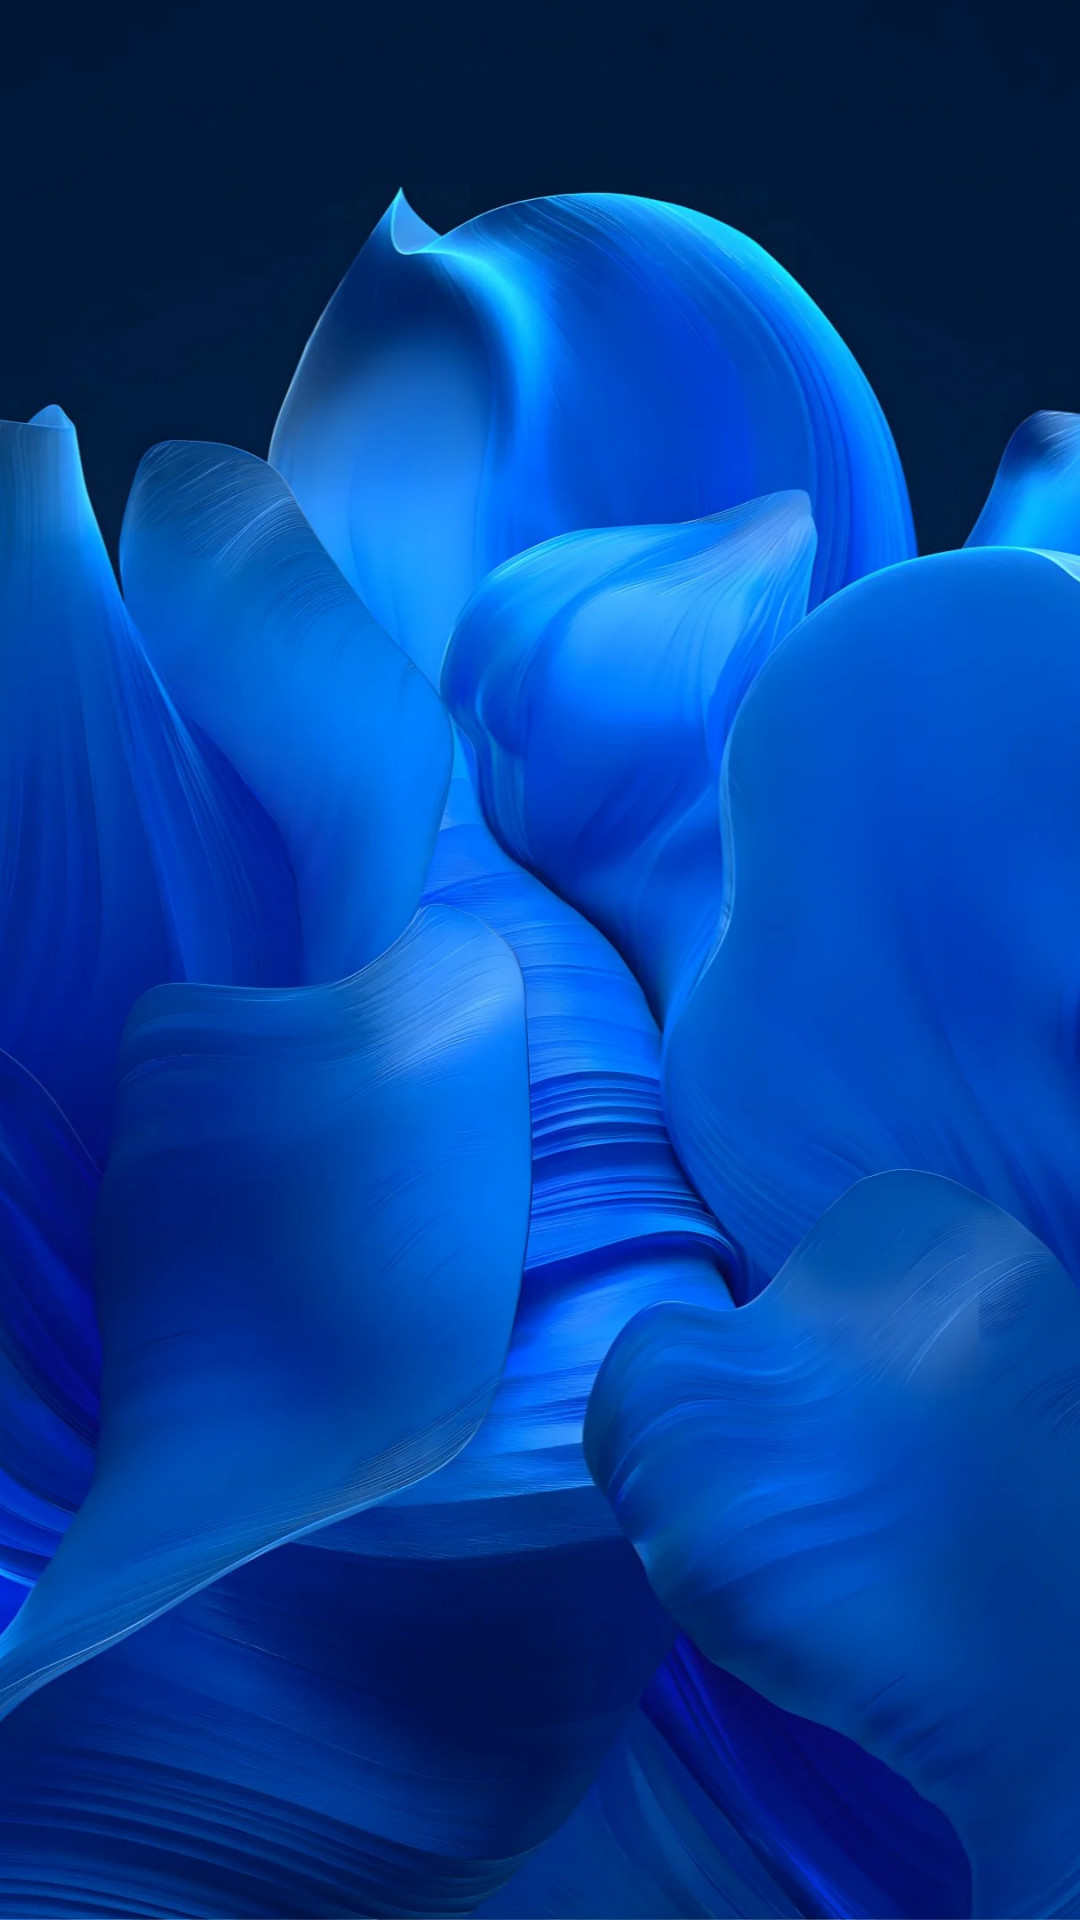 The blue petals wallpaper 1080x1920